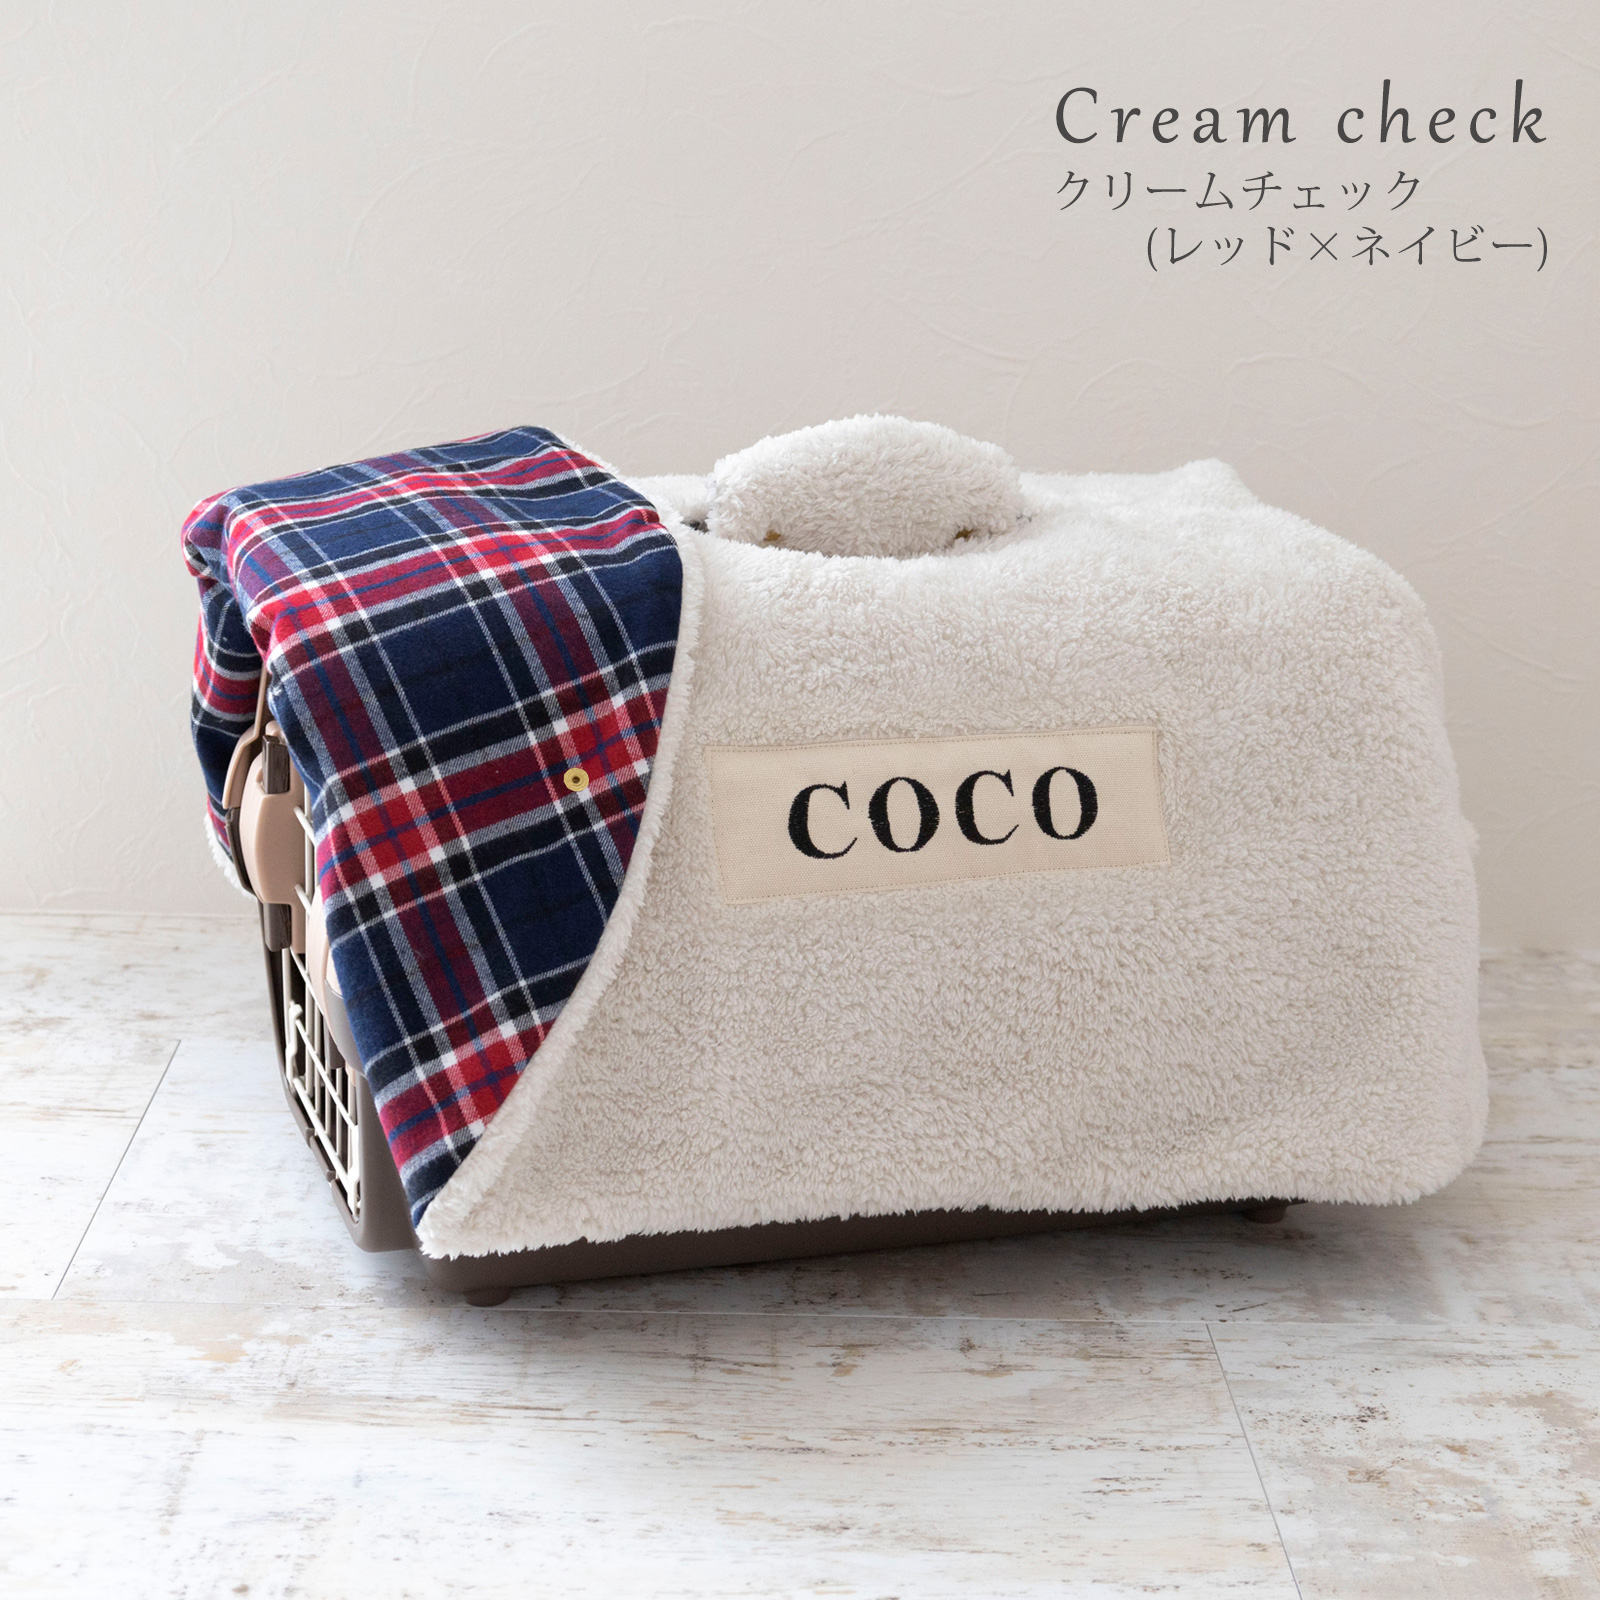 日本製 キャリー用カバー キャリーケース 犬 猫 防寒 冬 サイズ クリーム チェック